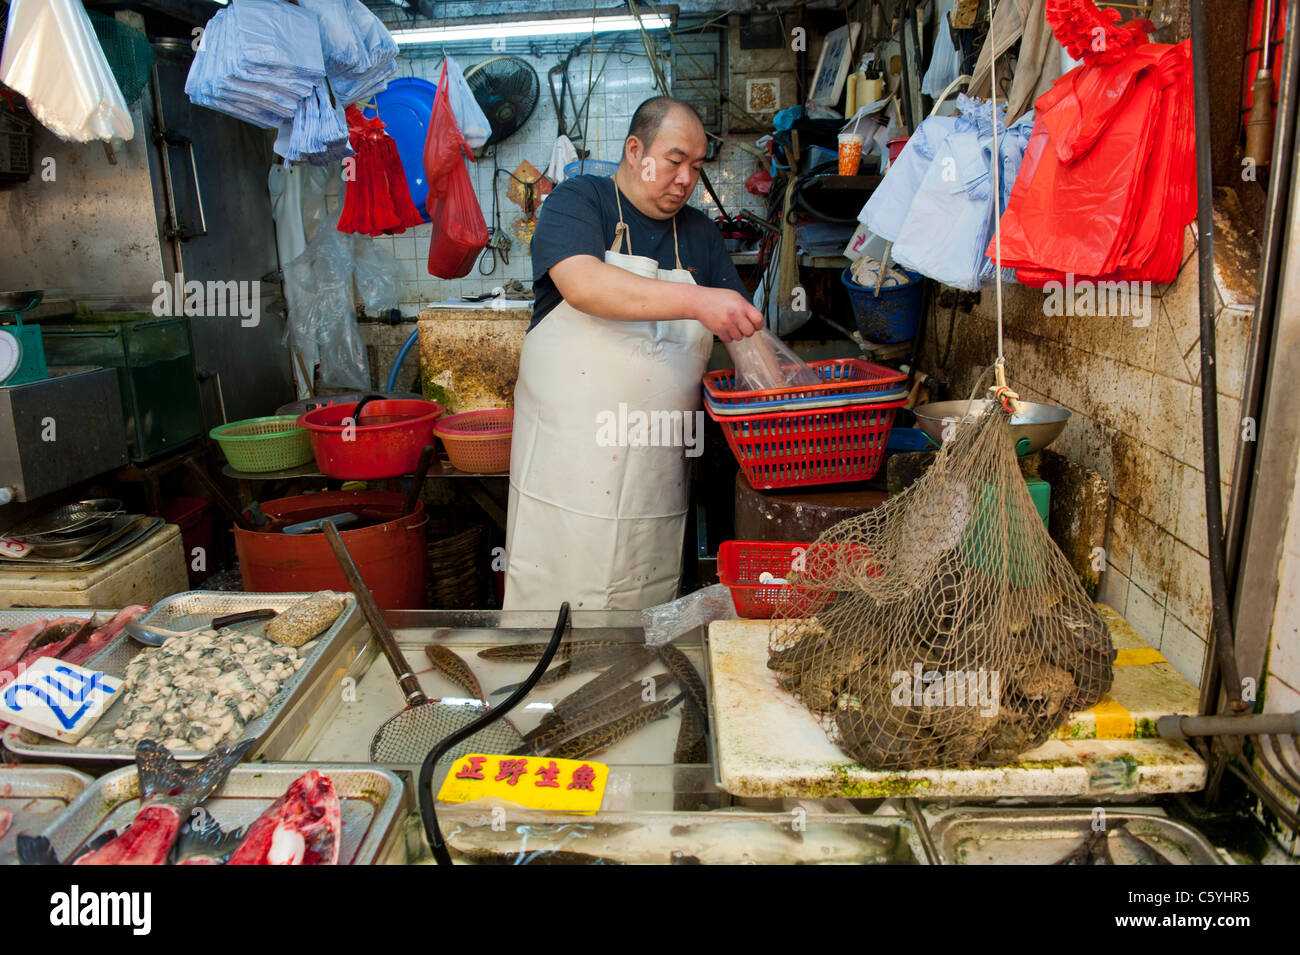 Des marchands de poisson échoppe de marché spécialisée dans les grenouilles dans la région de Tung Choi Street Mong Kok, Kowloon, Hong Kong Banque D'Images